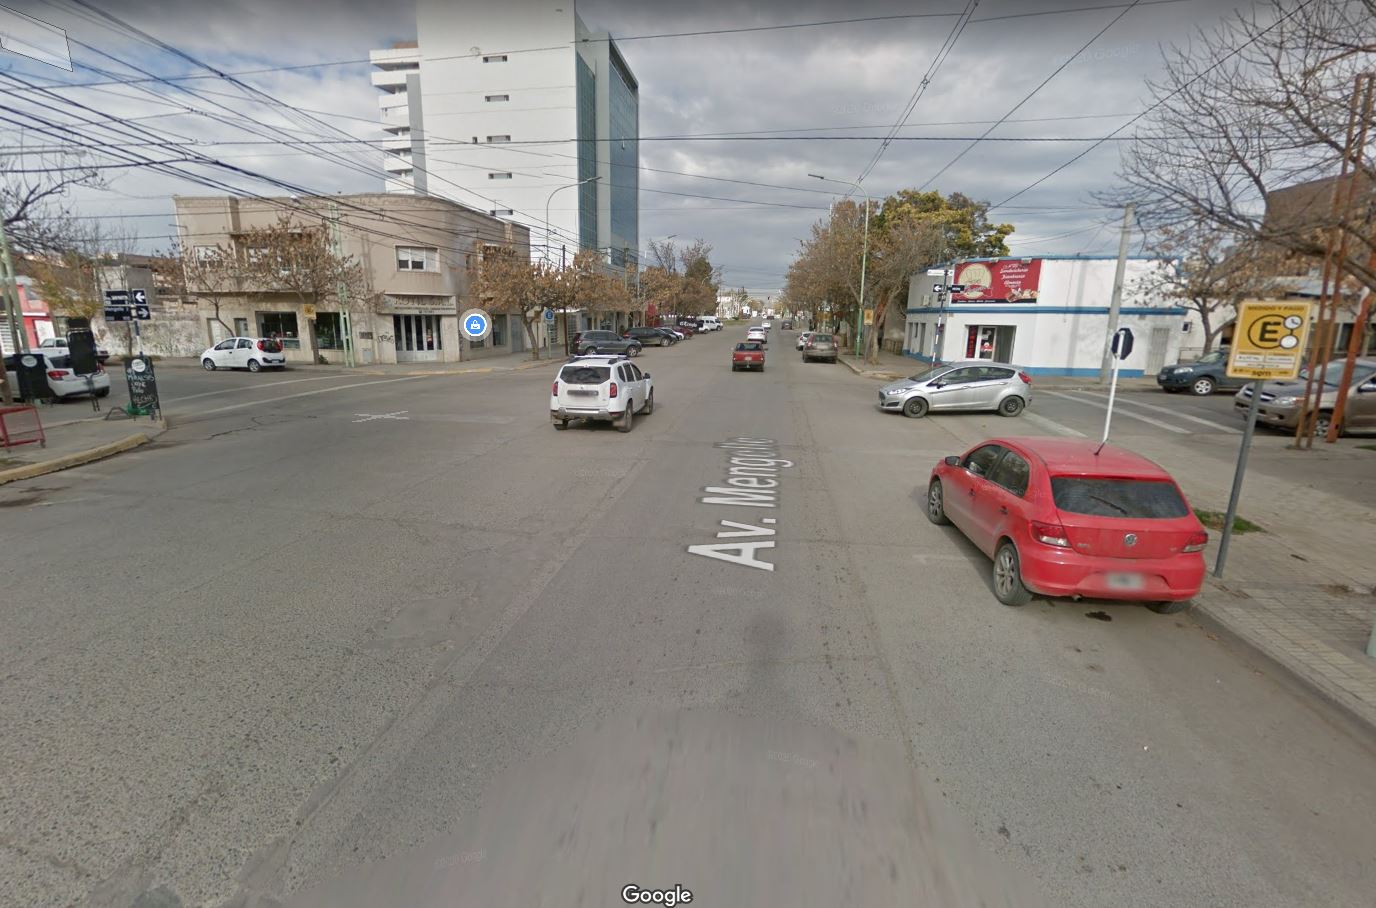 La esquina del accidente. A pesar de lo que dice Google Maps, Mengelle no es avenida.